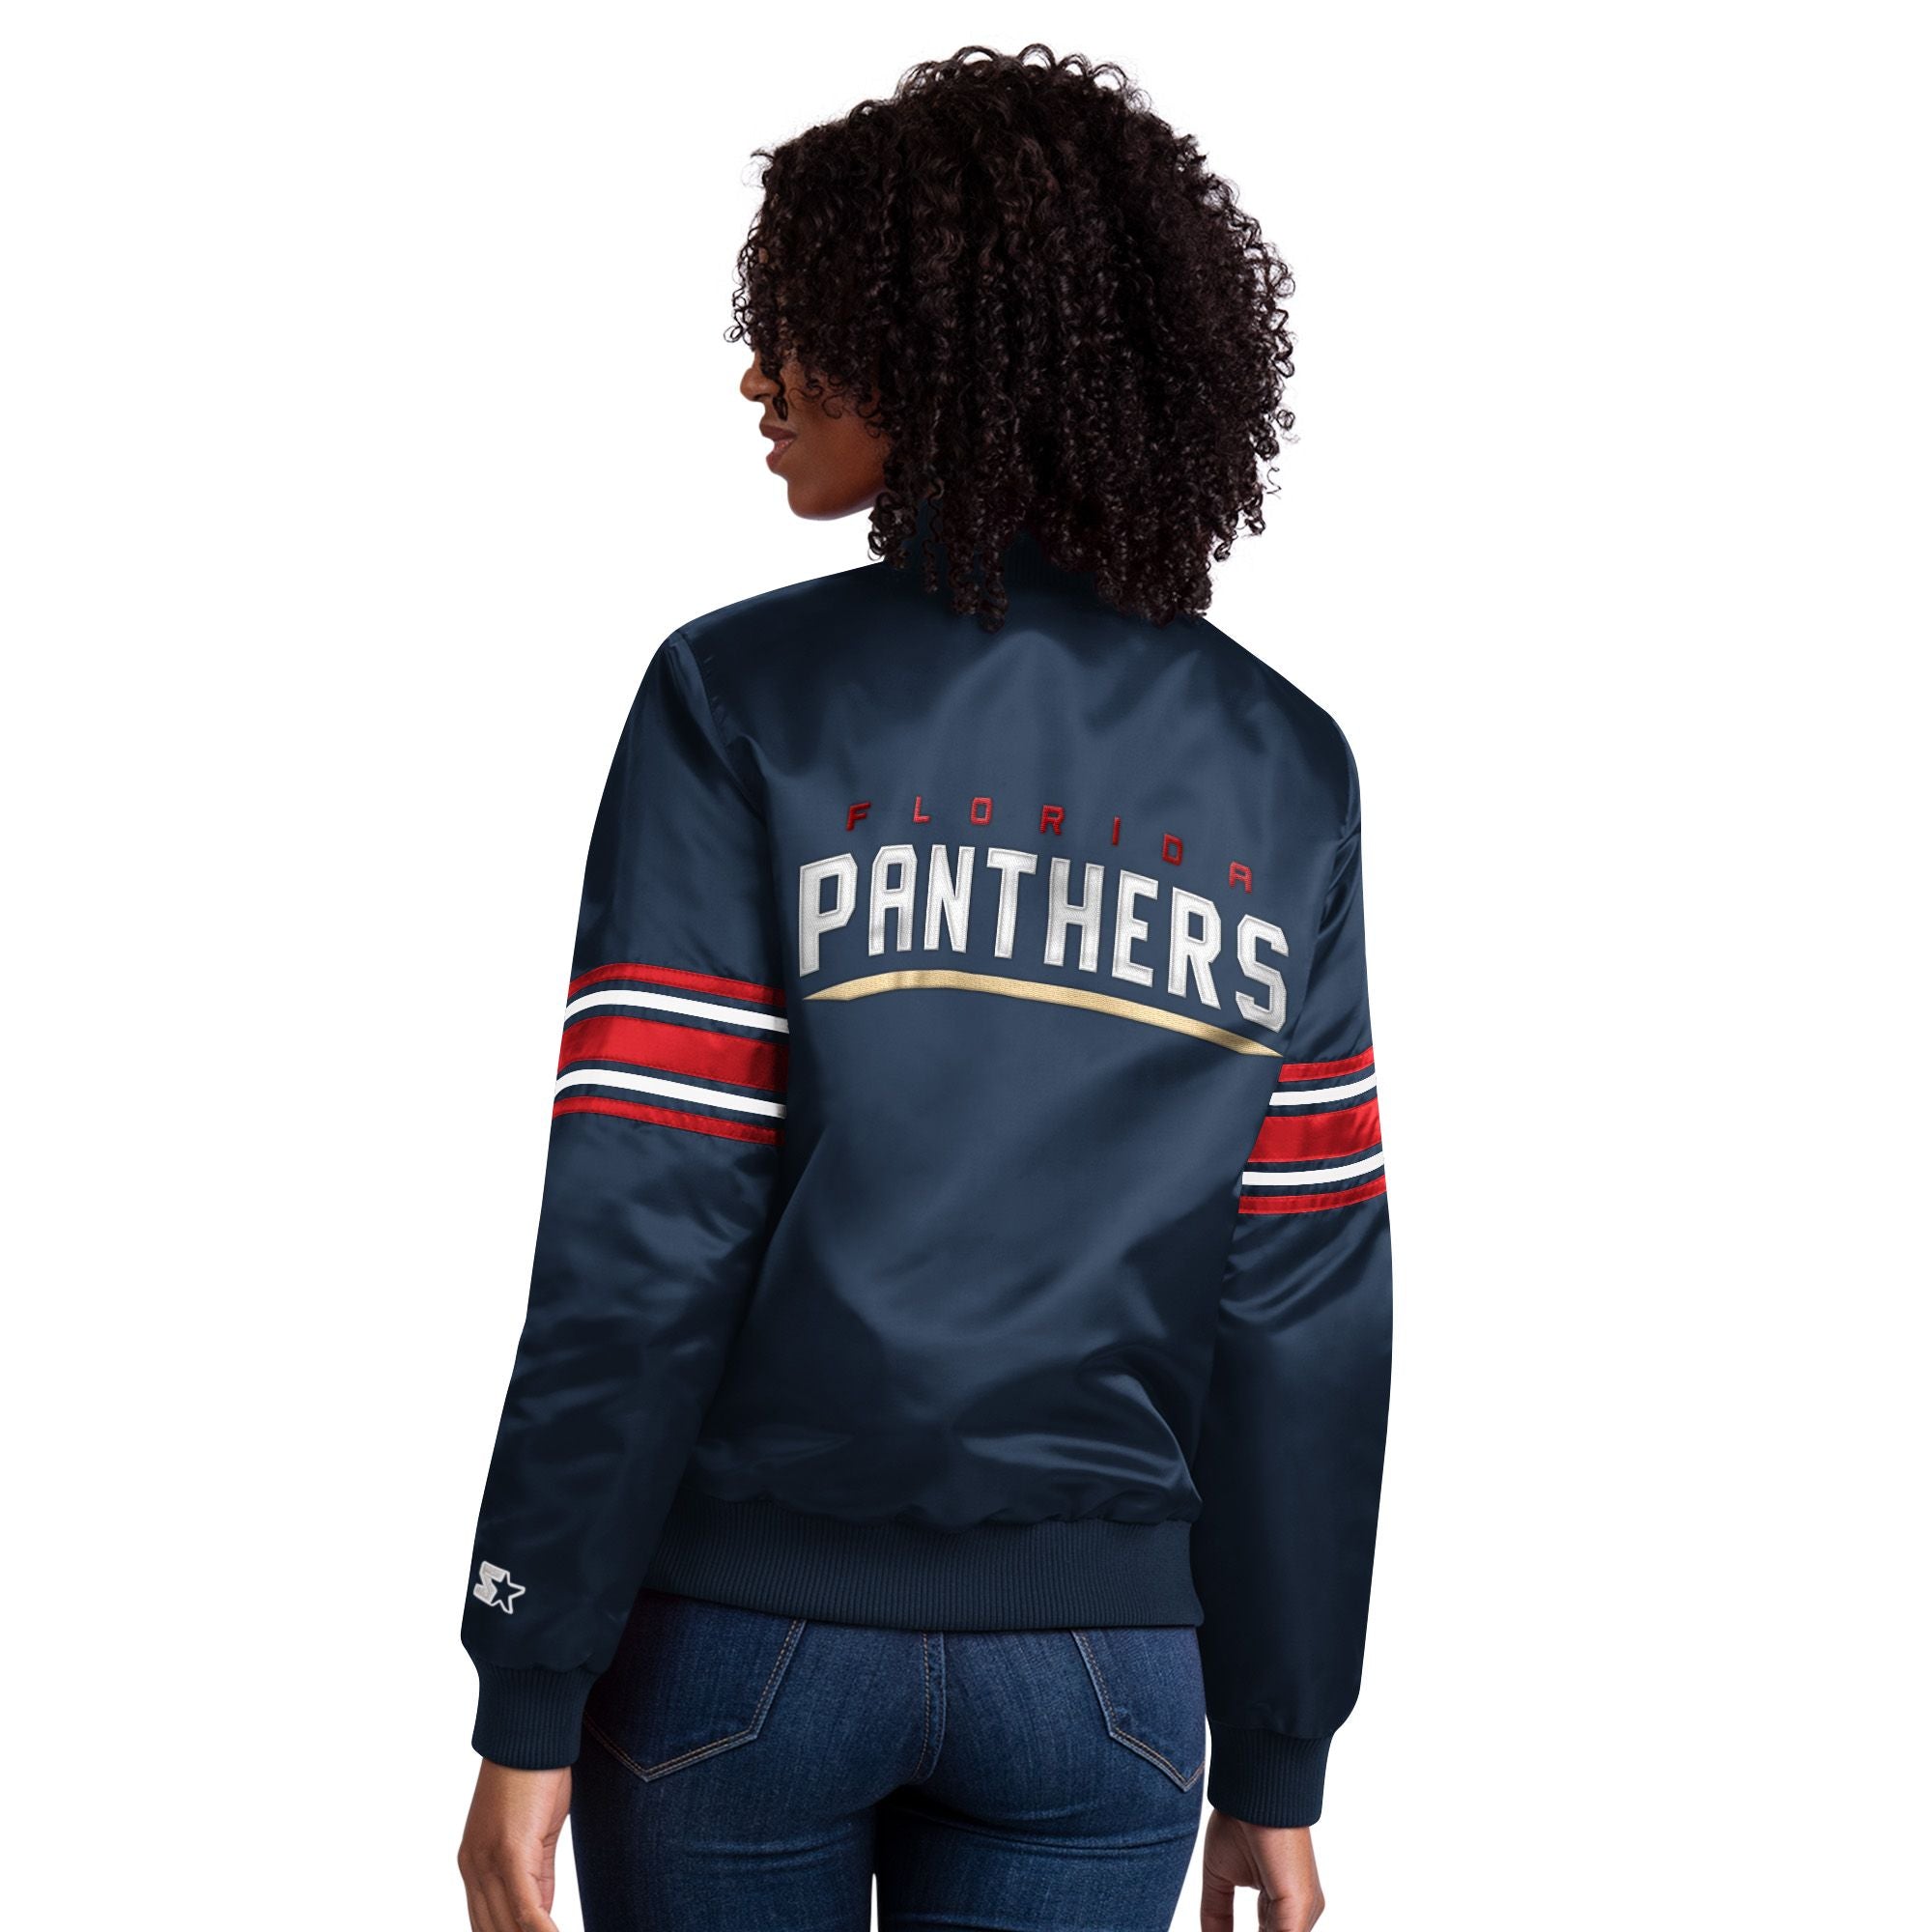 Florida Panthers Jacket, Panthers Pullover, Florida Panthers